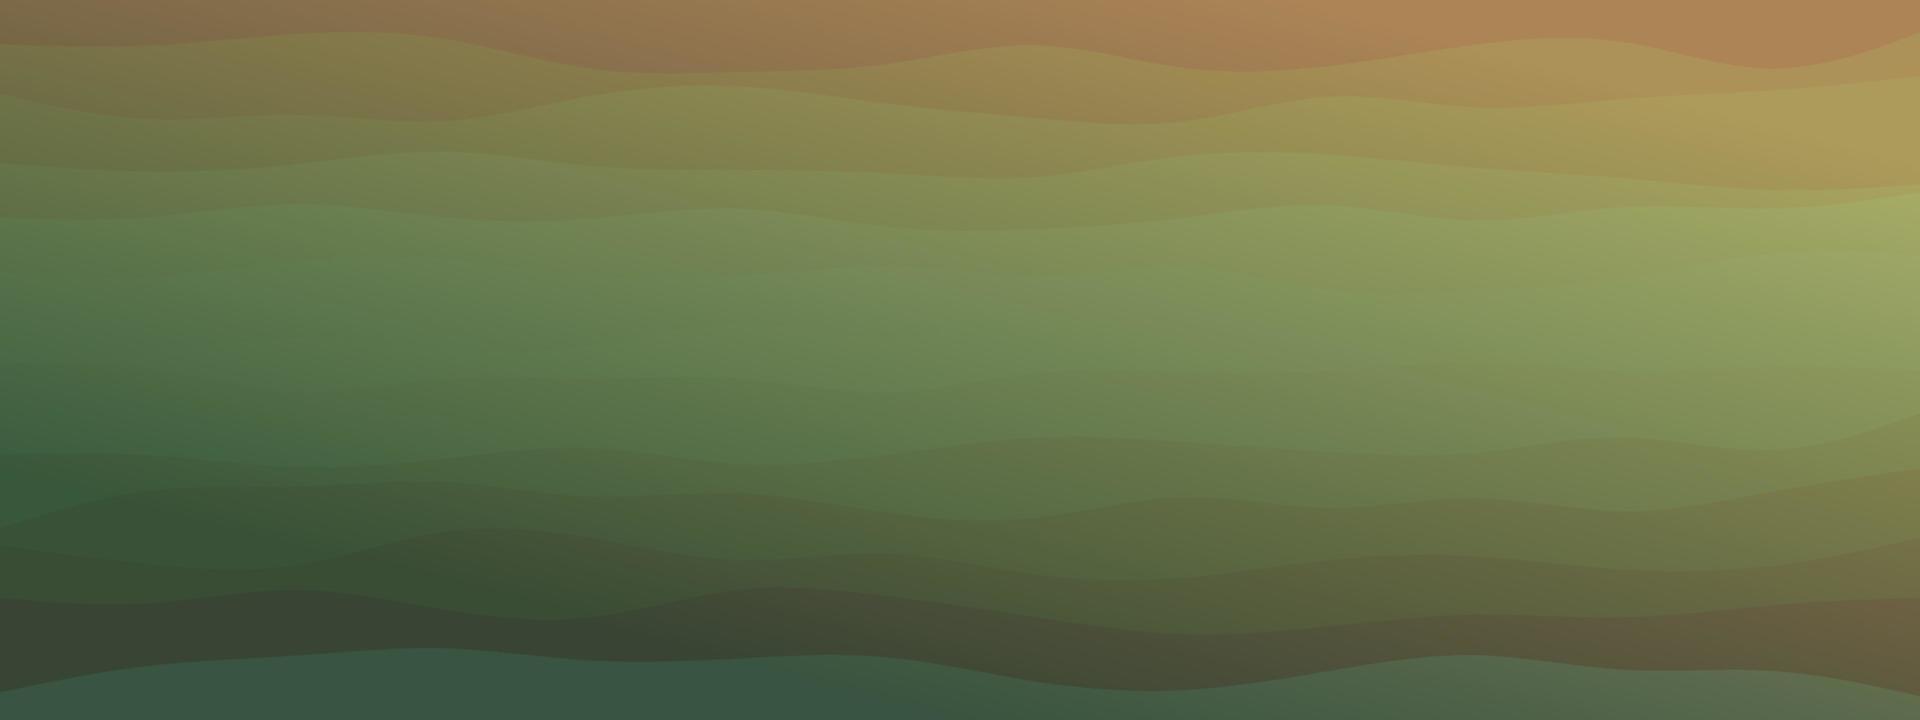 abstracte golven vloeiende vorm niveaus achtergrond natuurlijke bleke kleurverloop. trendy sjabloon voor flyer poster visitekaartje bestemmingspagina website. vector illustratie eps 10